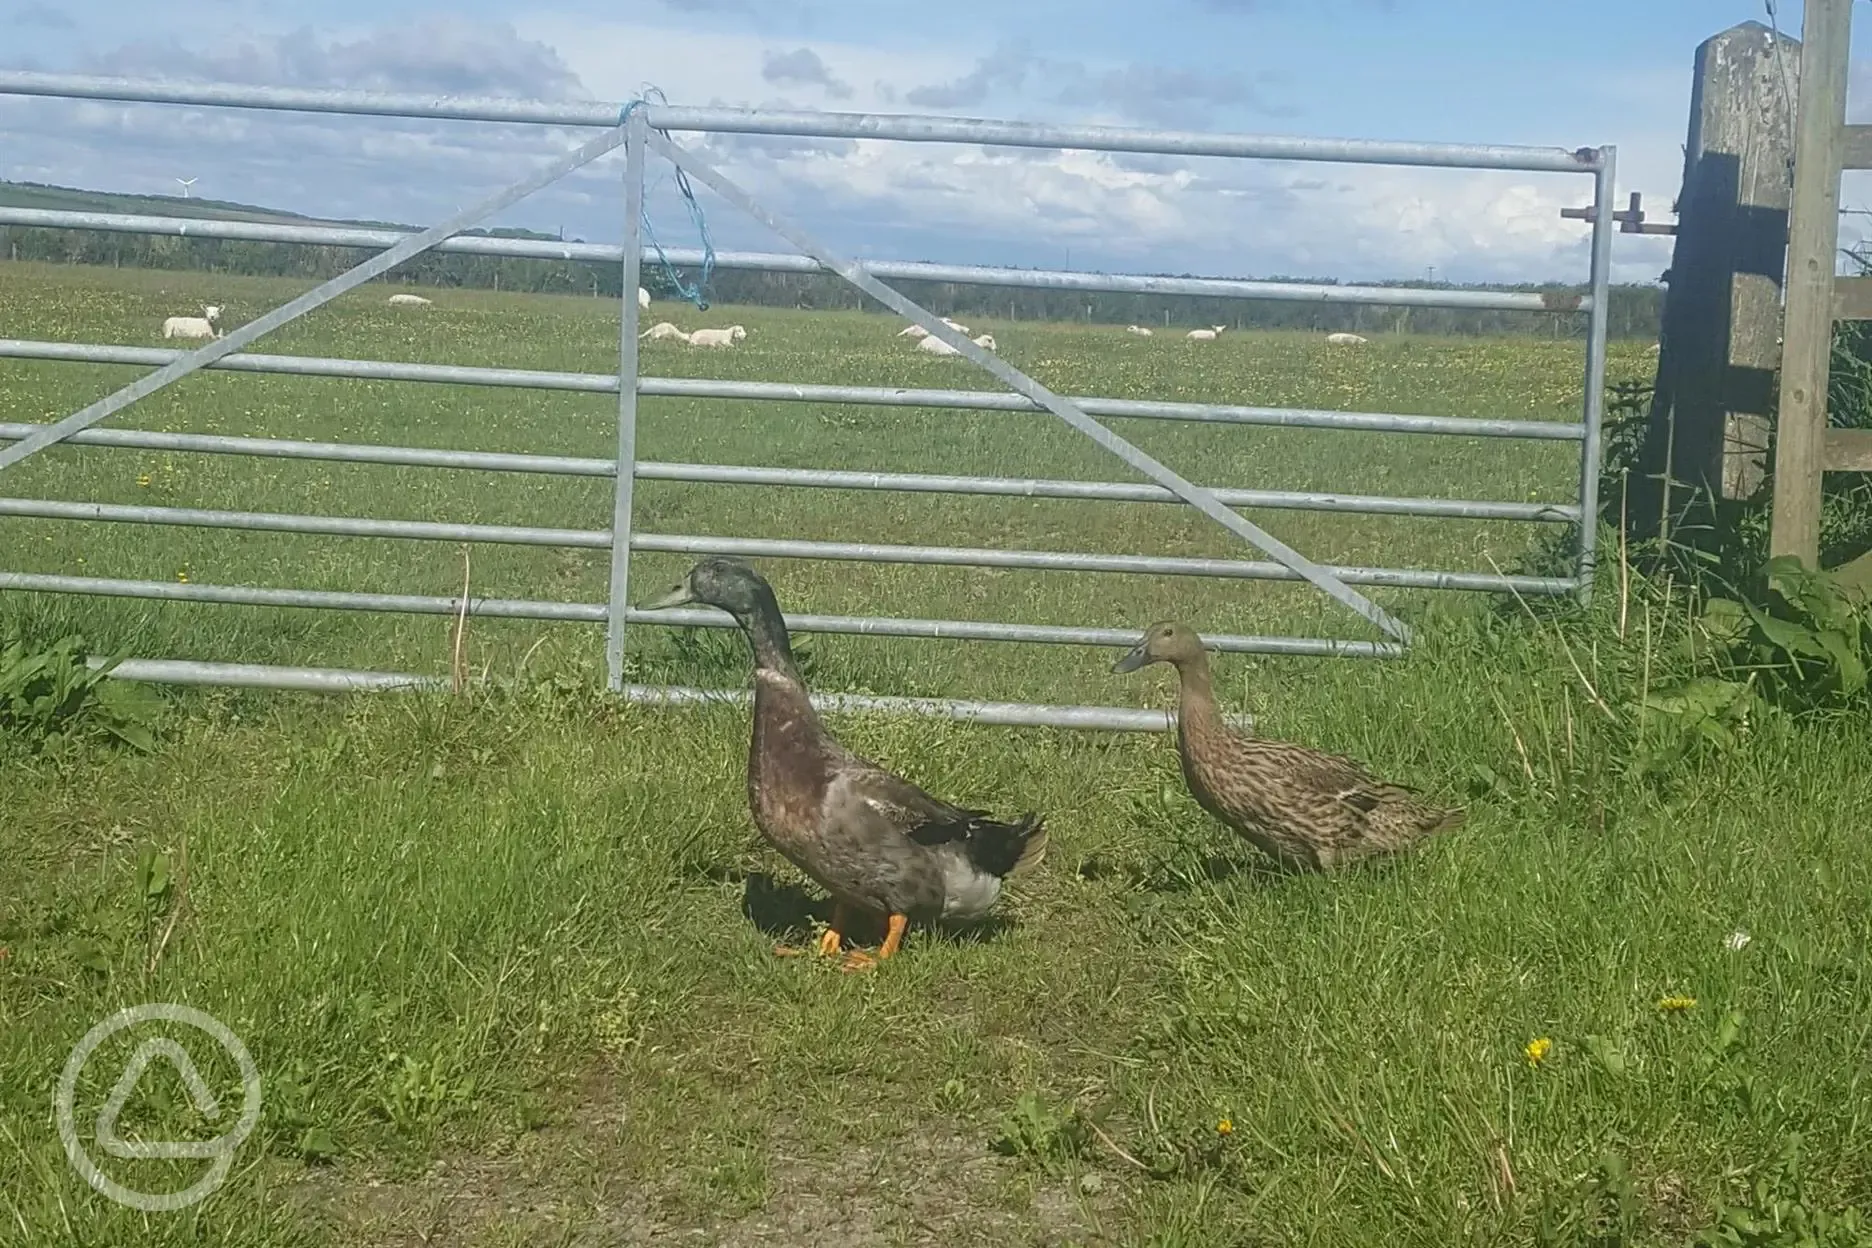 Resident ducks